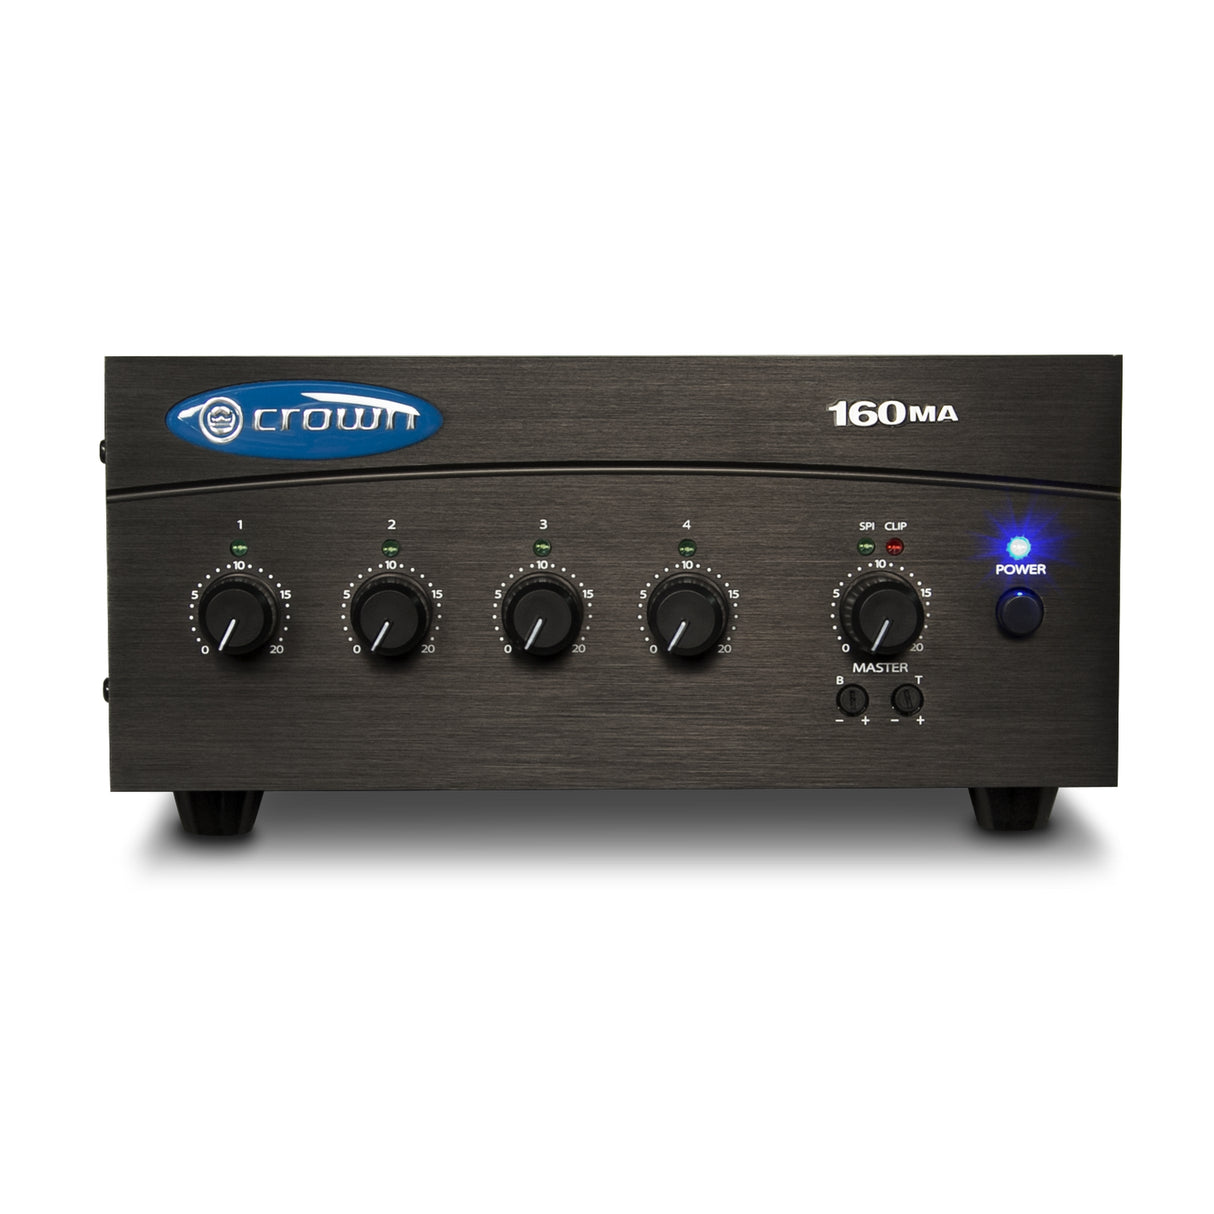 Crown 160MA | 4 Input 60 Watt Mixer Amplifier